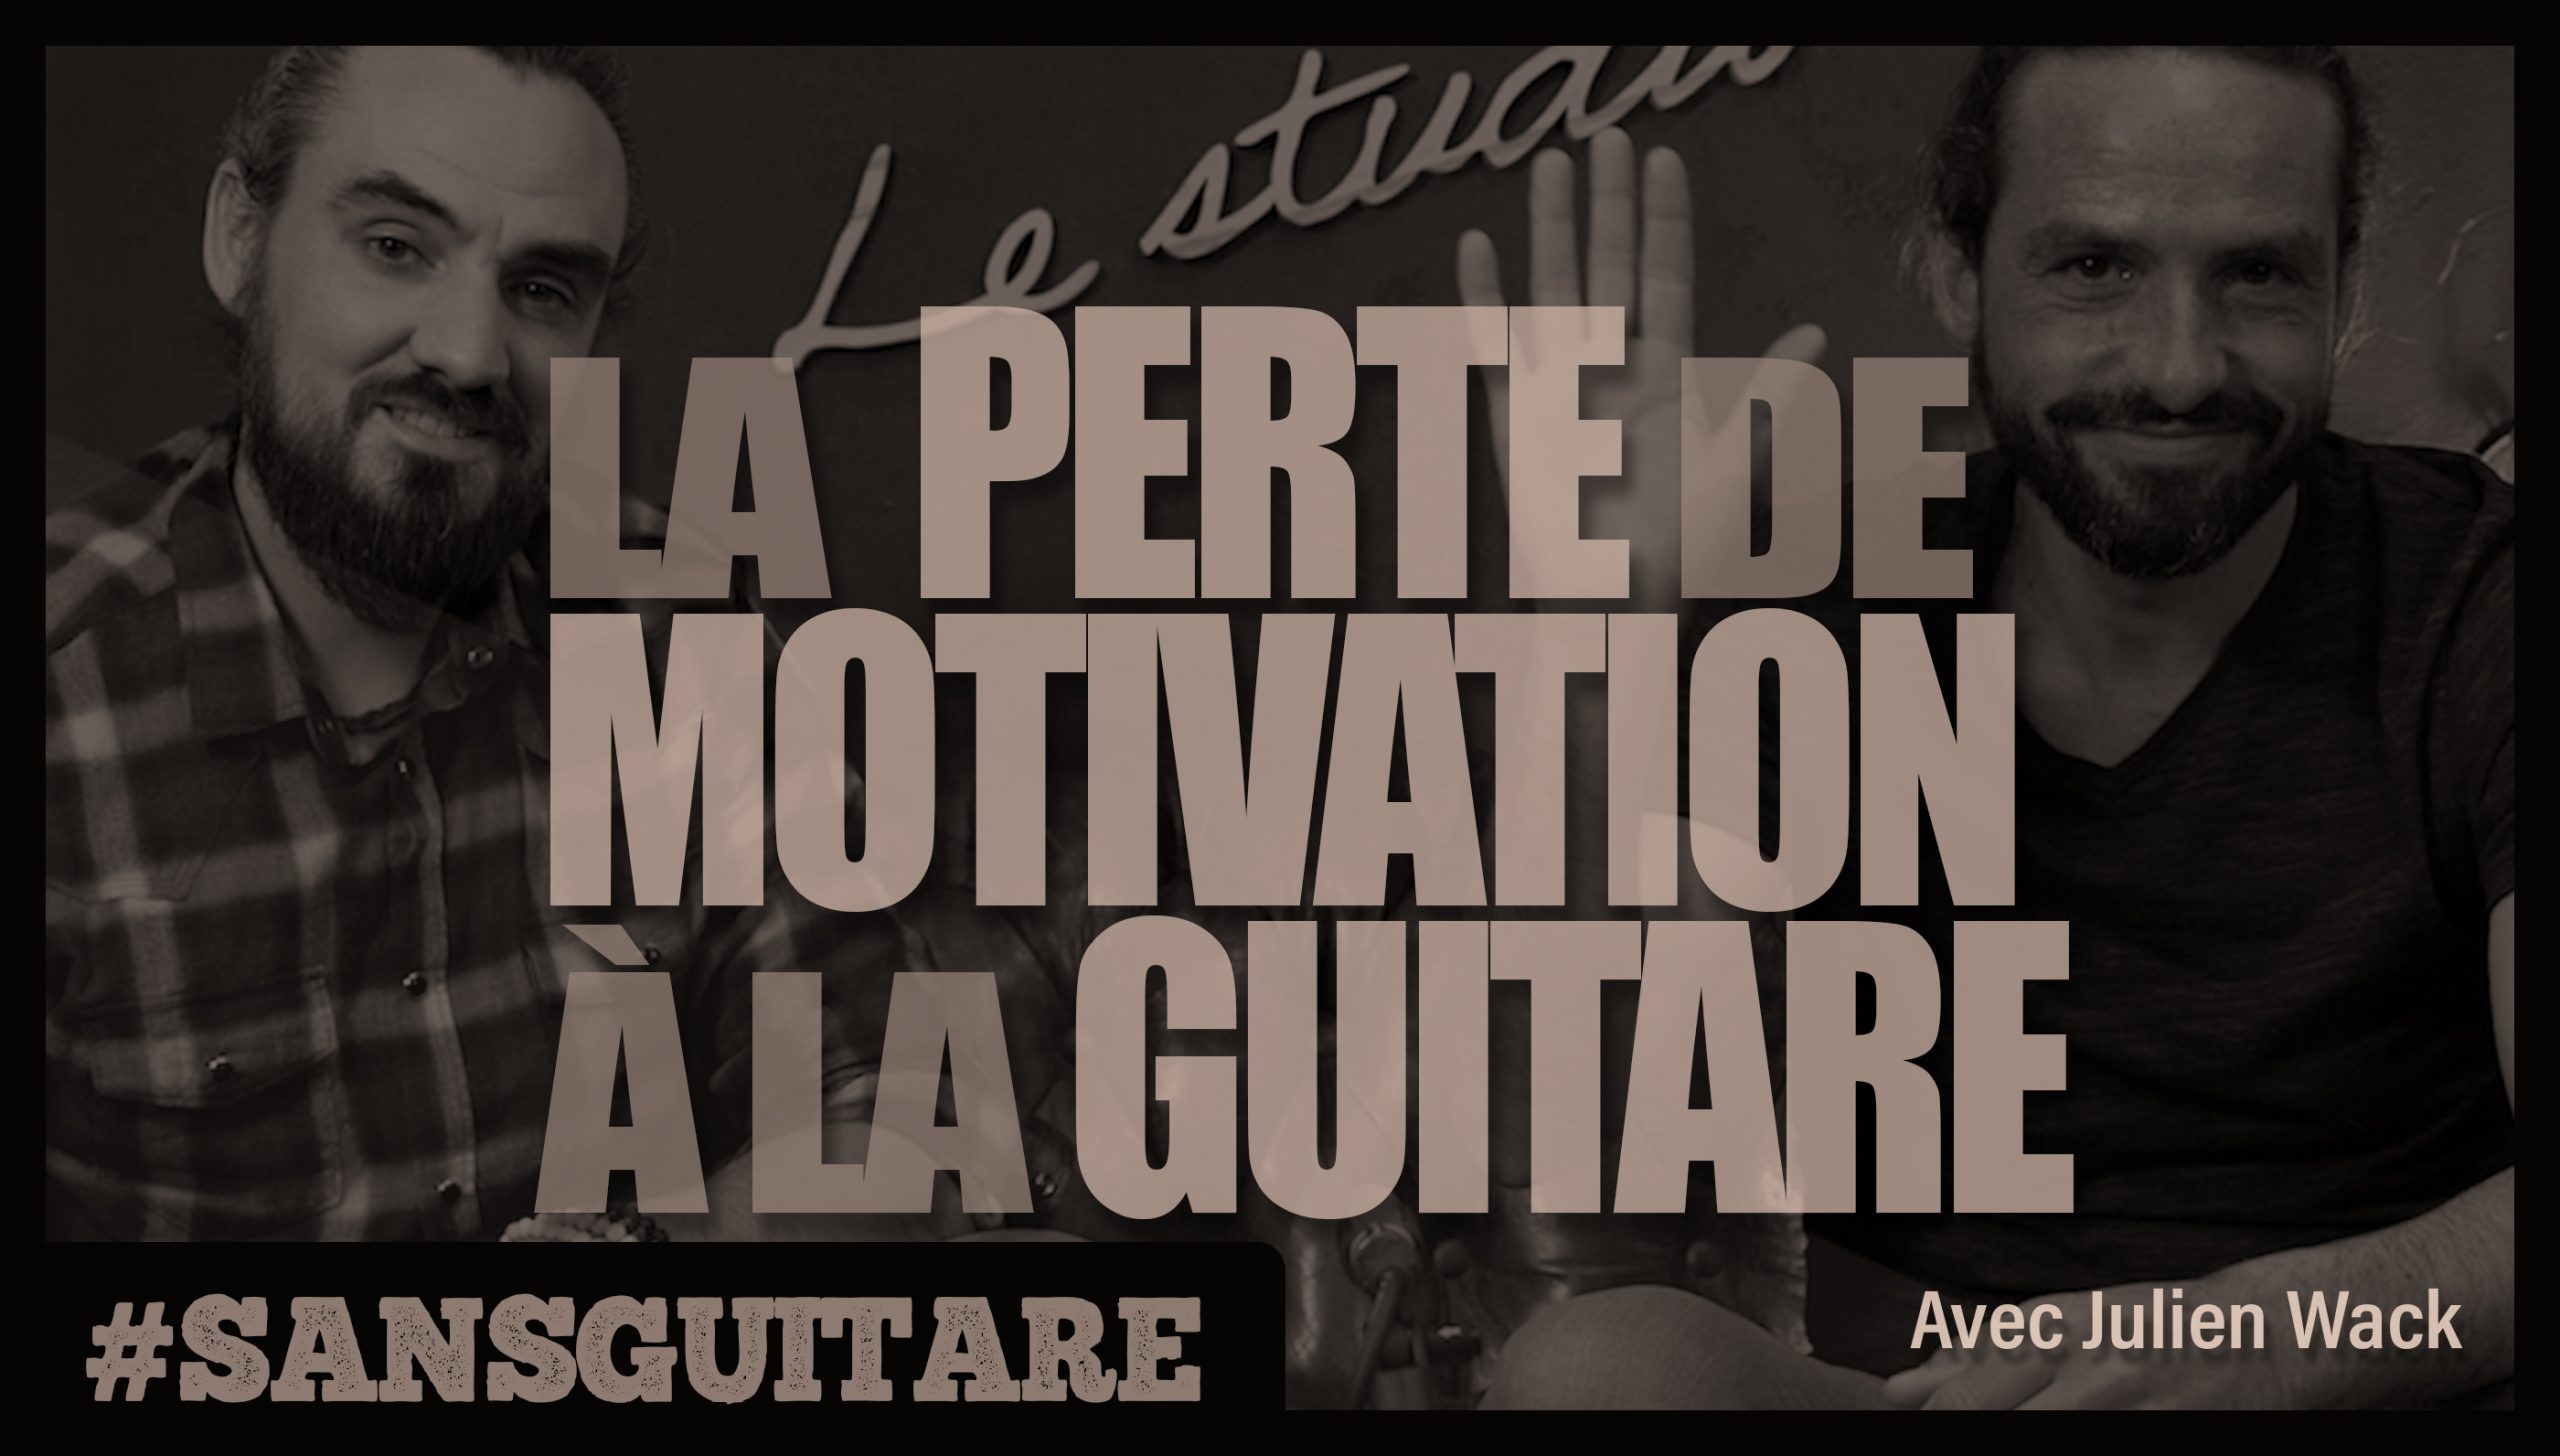 #SANS GUITARE – La perte de motivation à la guitare avec Julien Wack